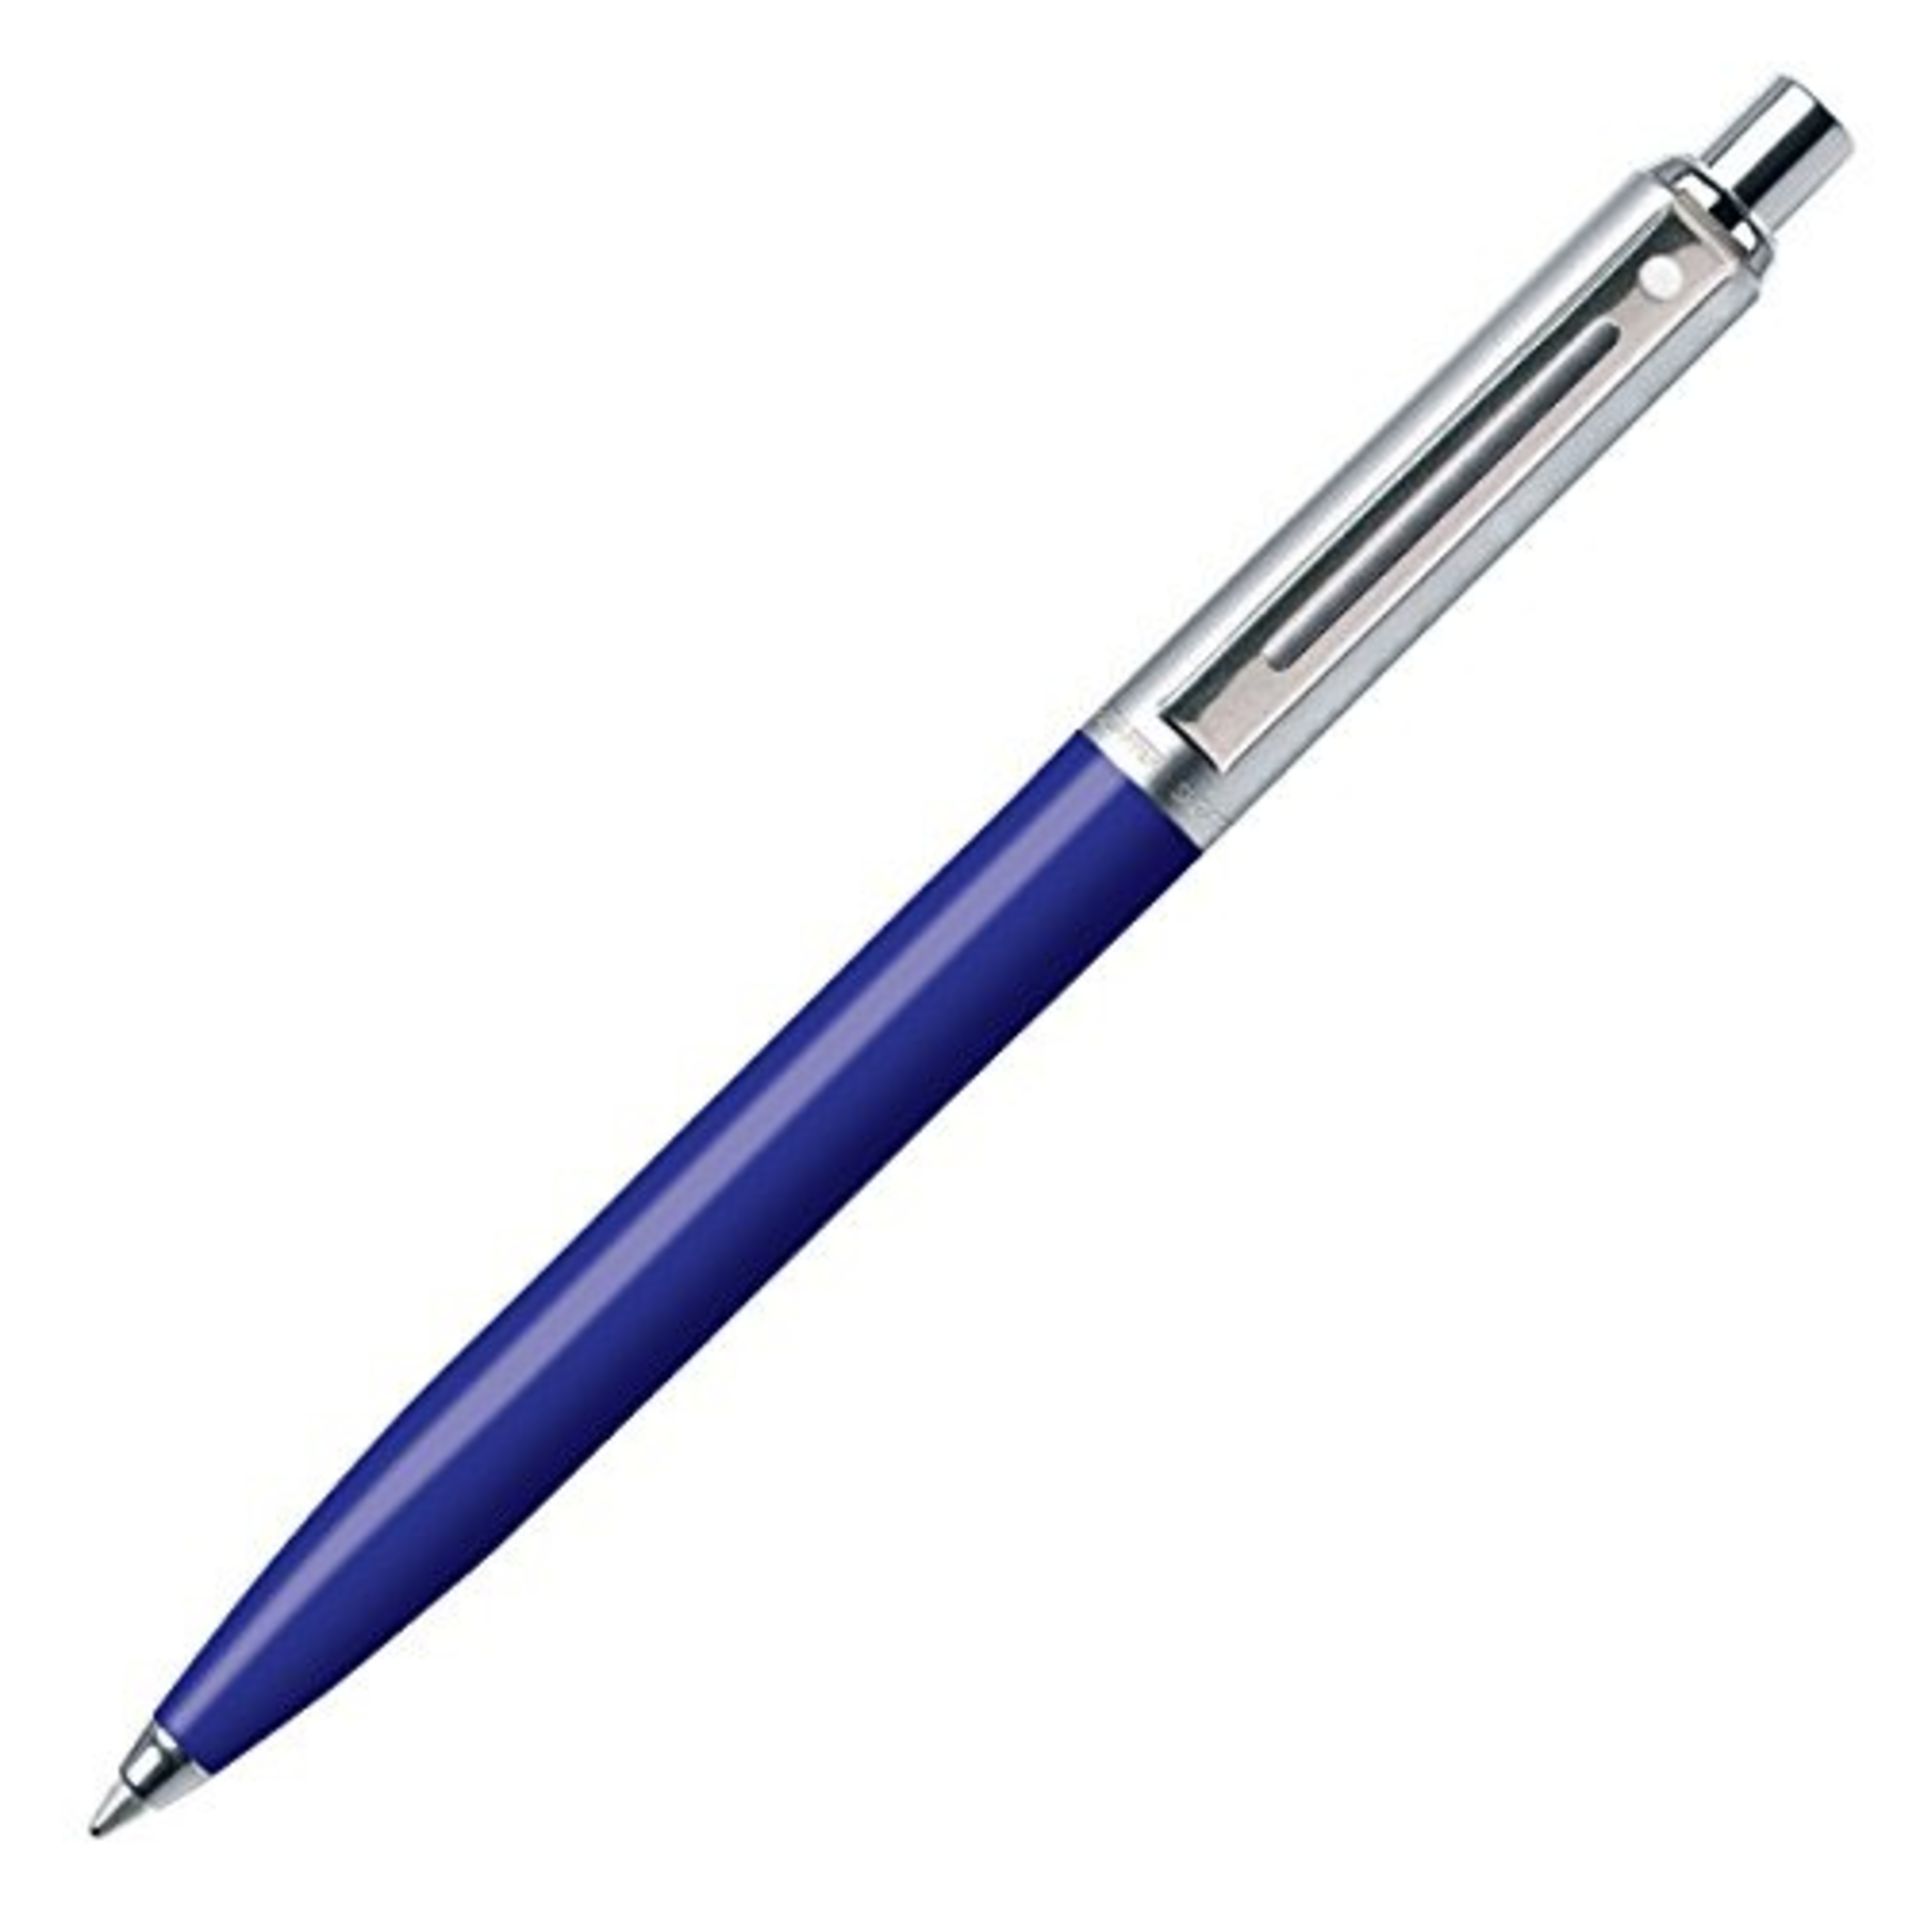 V Brand New Sheaffer Sentinel 321-2 Ultramarine Ballpoint Pen ISP £12.49 (Amazon) 12.99 (Ebay)